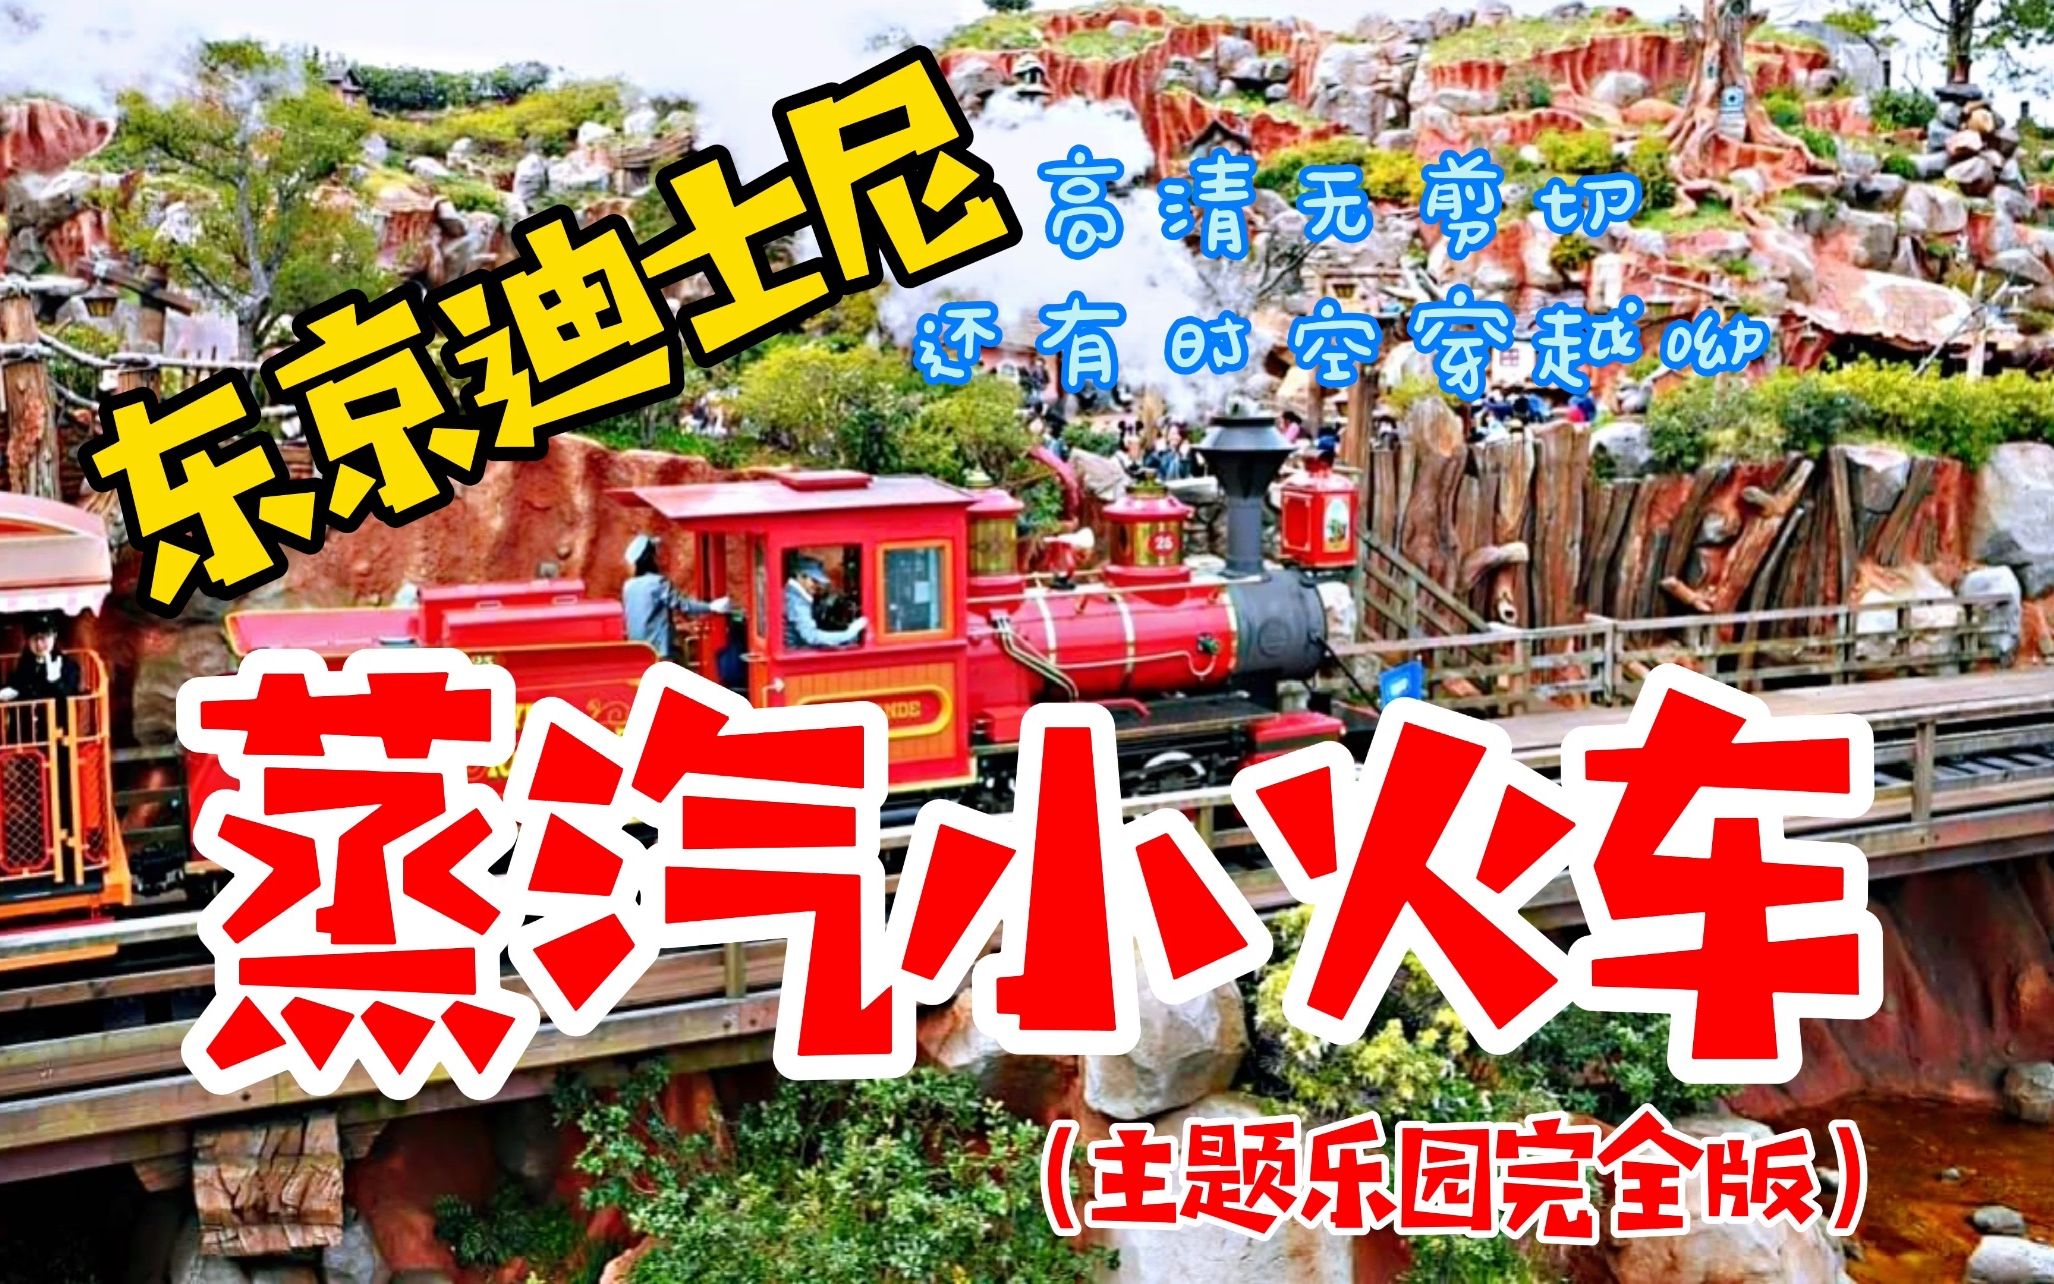 跨越半个园区的东京迪士尼蒸汽小火车，后边还有恐龙的时空穿越呦